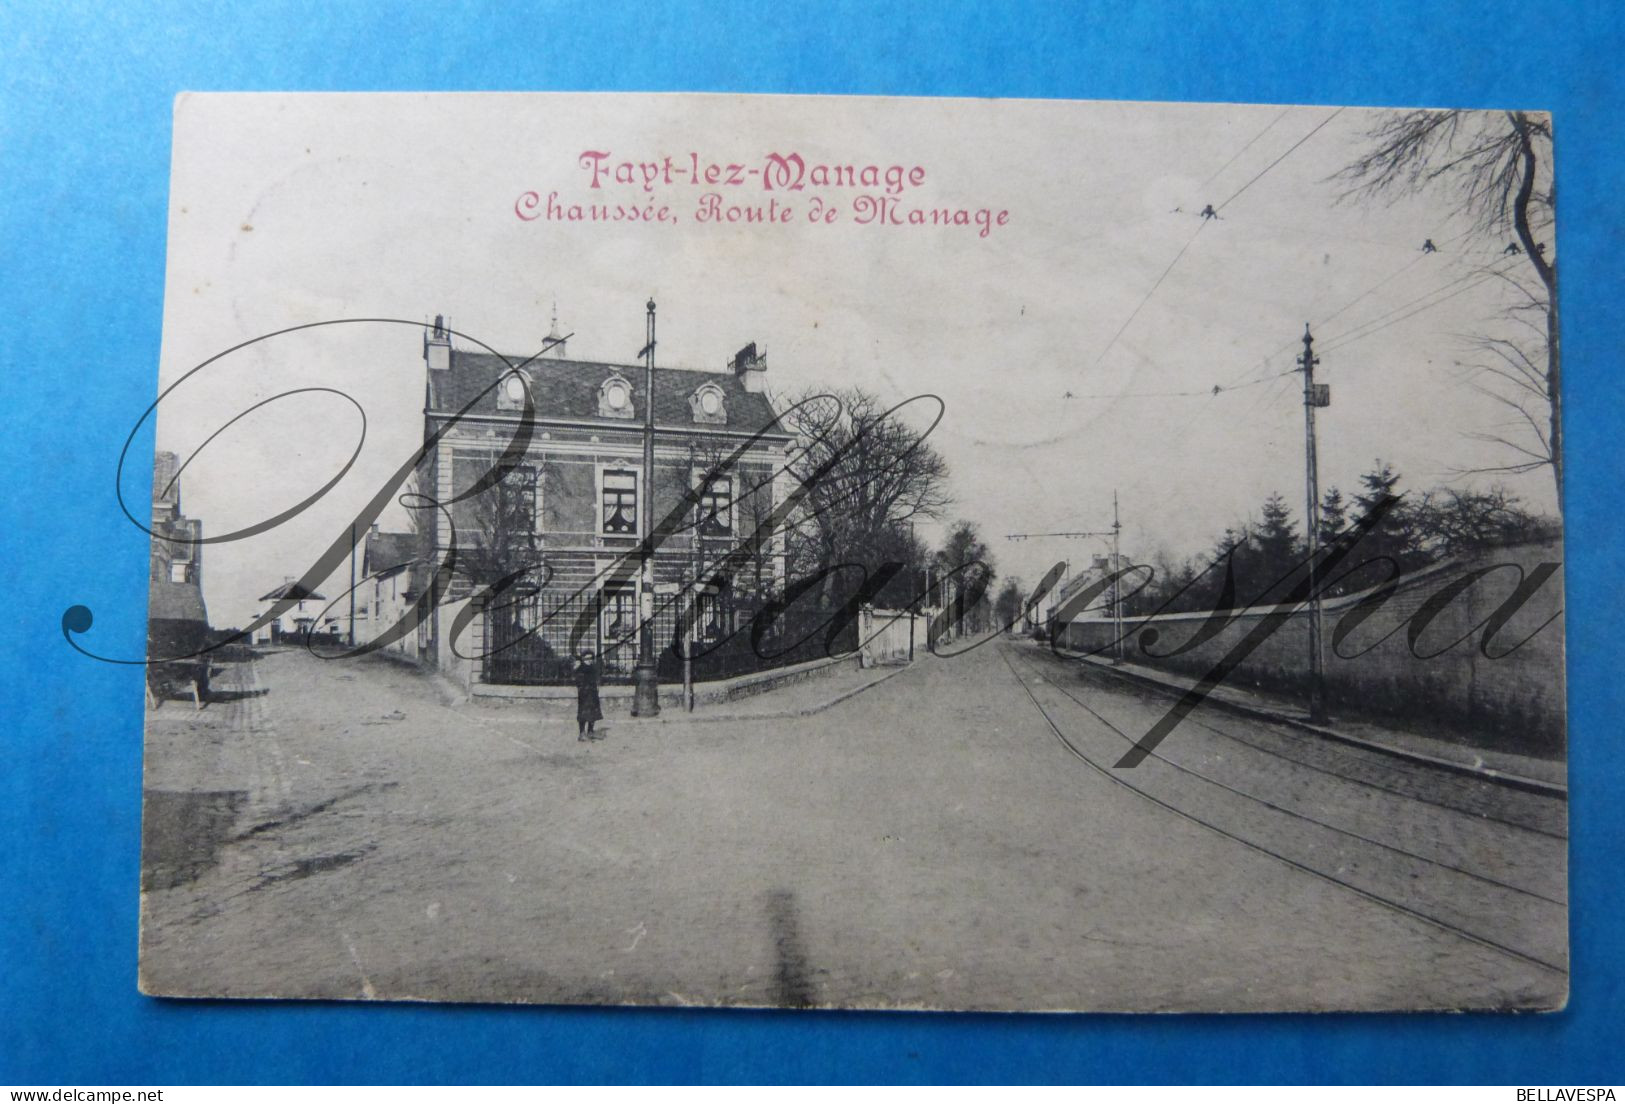 Fayt Lez Manage Chaussee Route De Manage 1913 - Manage